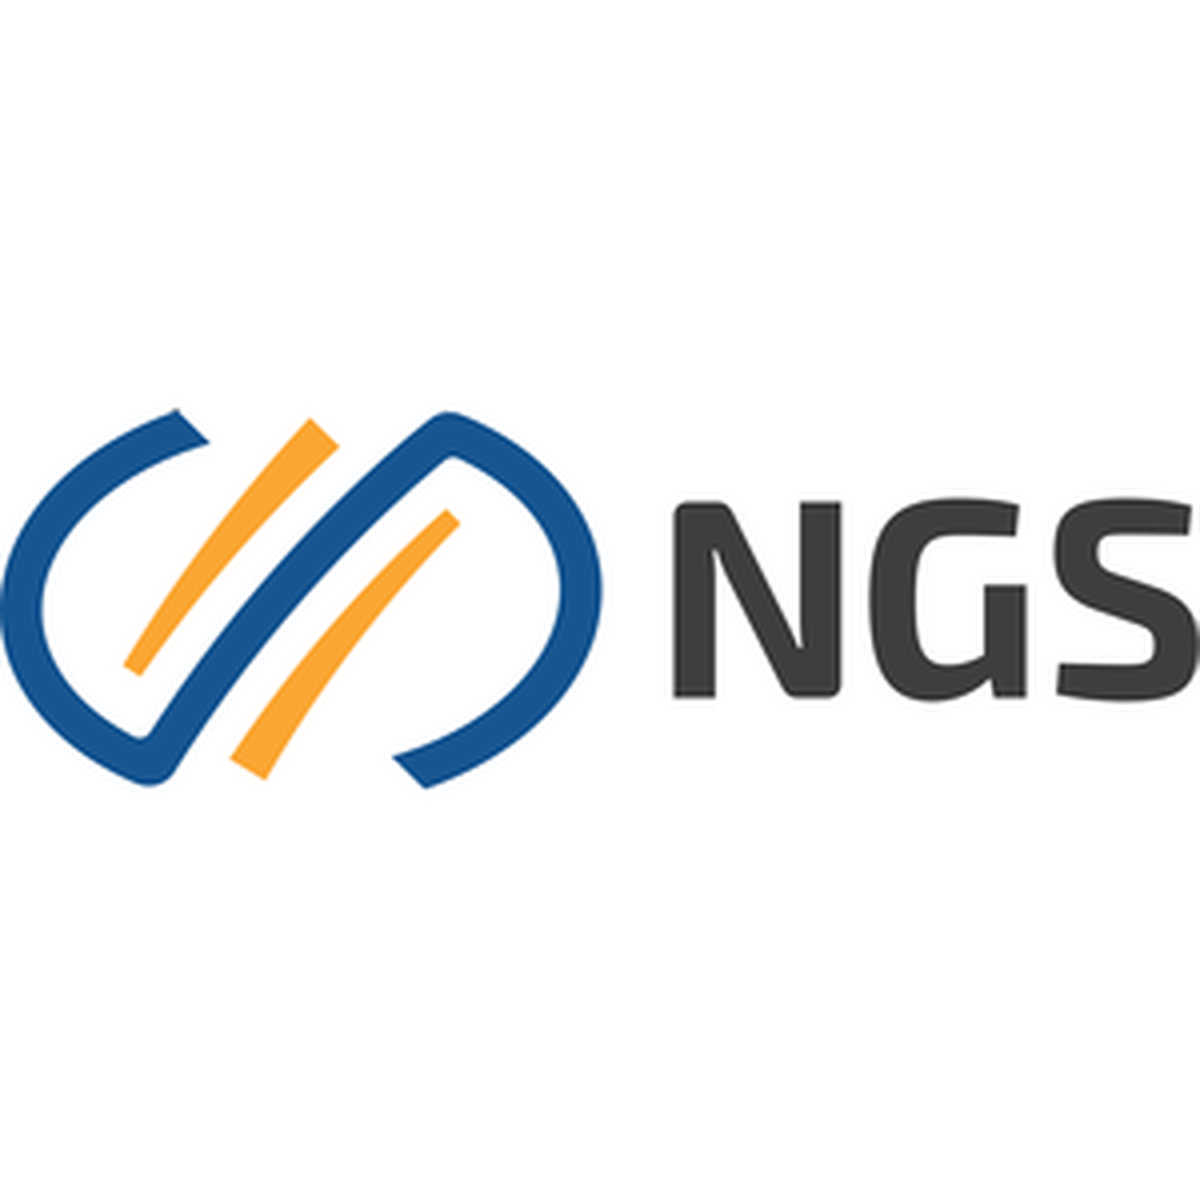 Ngs. НГС логотип. Логотипы NGS контора. Народная премия НГС лого. "@NGS.Group".